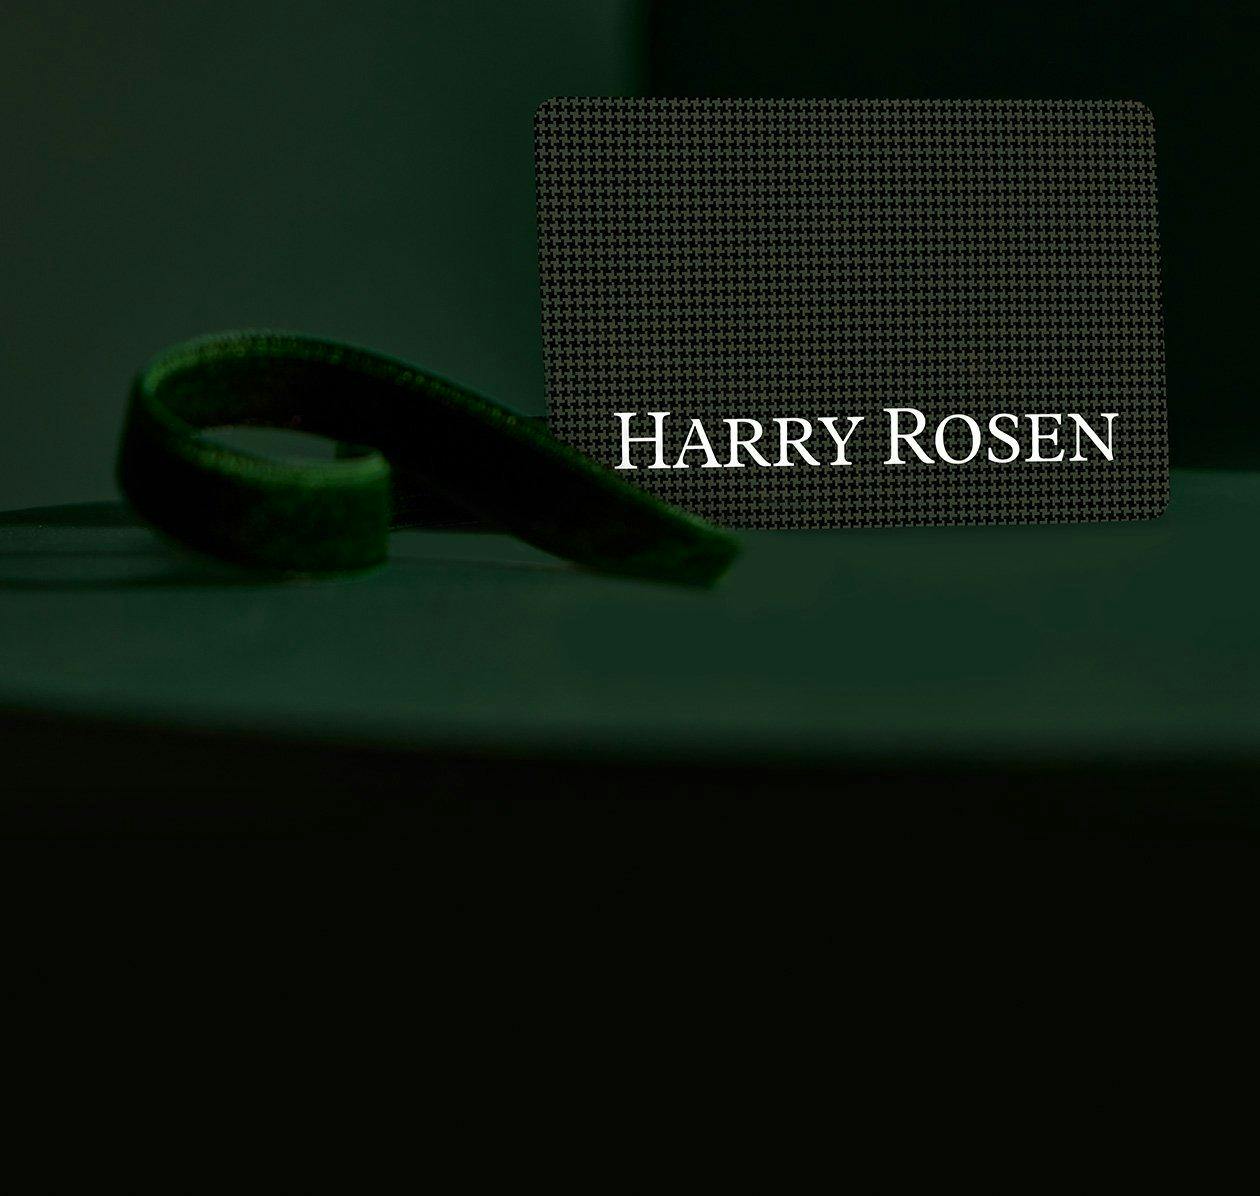 harry rosen gift bags and male hand holding harry rosen gift card over cash desk